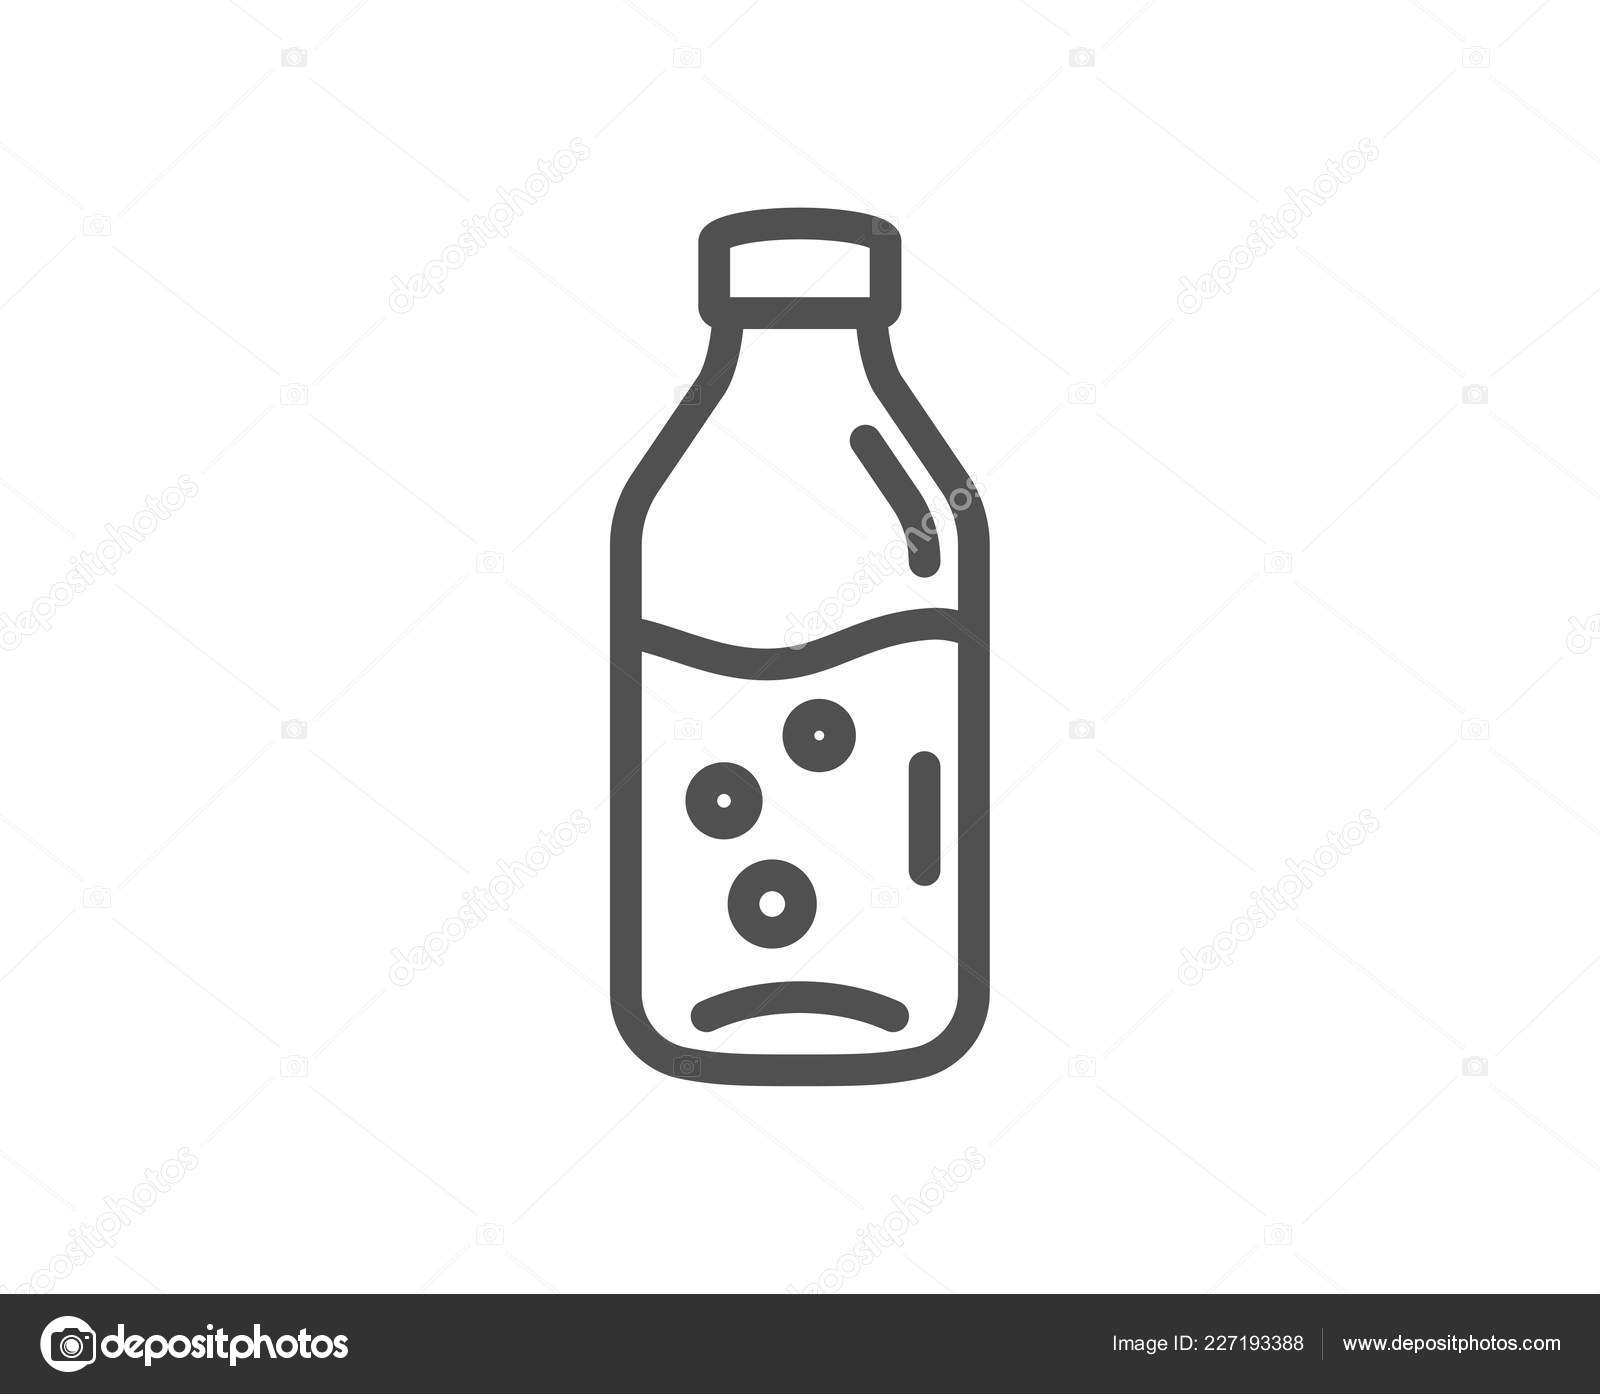 https://st4.depositphotos.com/1915171/22719/v/1600/depositphotos_227193388-stock-illustration-water-bottle-line-icon-soda.jpg